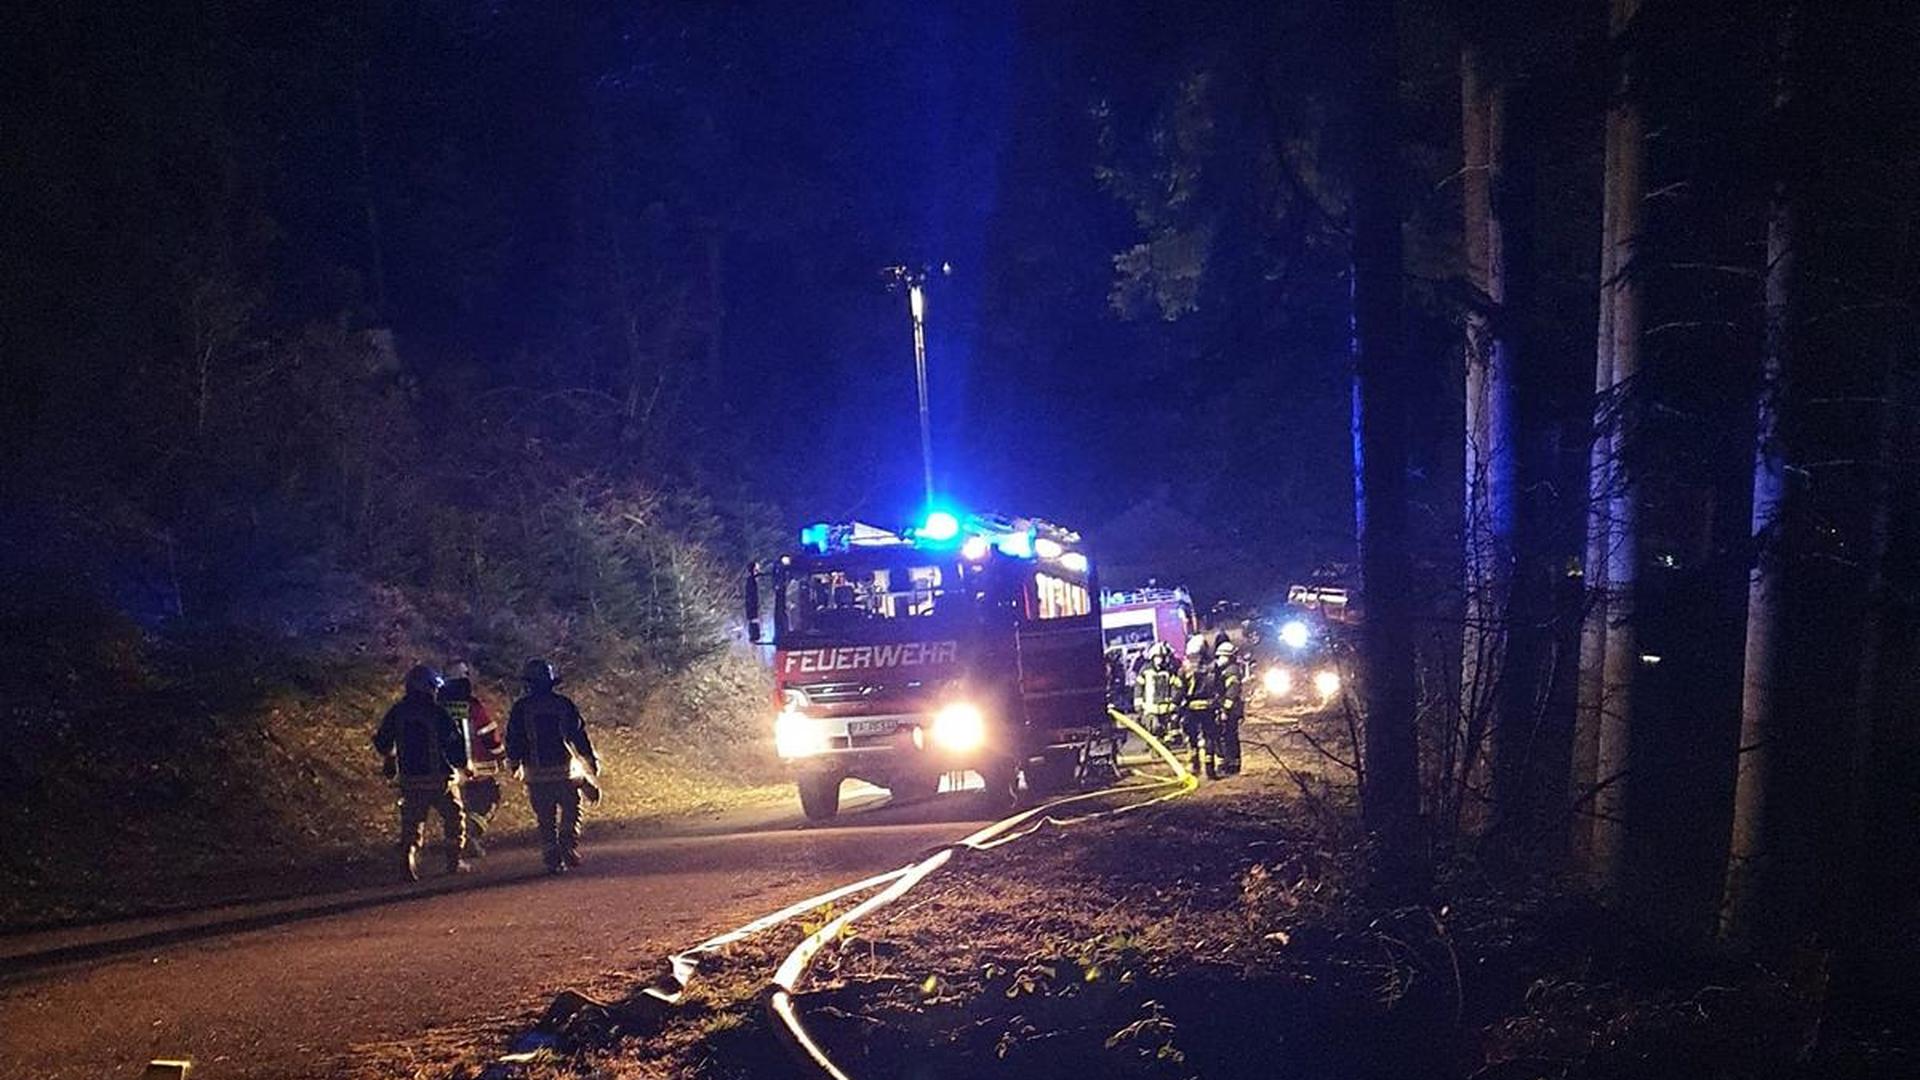 Feuerwehrautos stehen nachts in einem Wald, im Vordergrund sind ausgerollte Schläuche zu sehen.